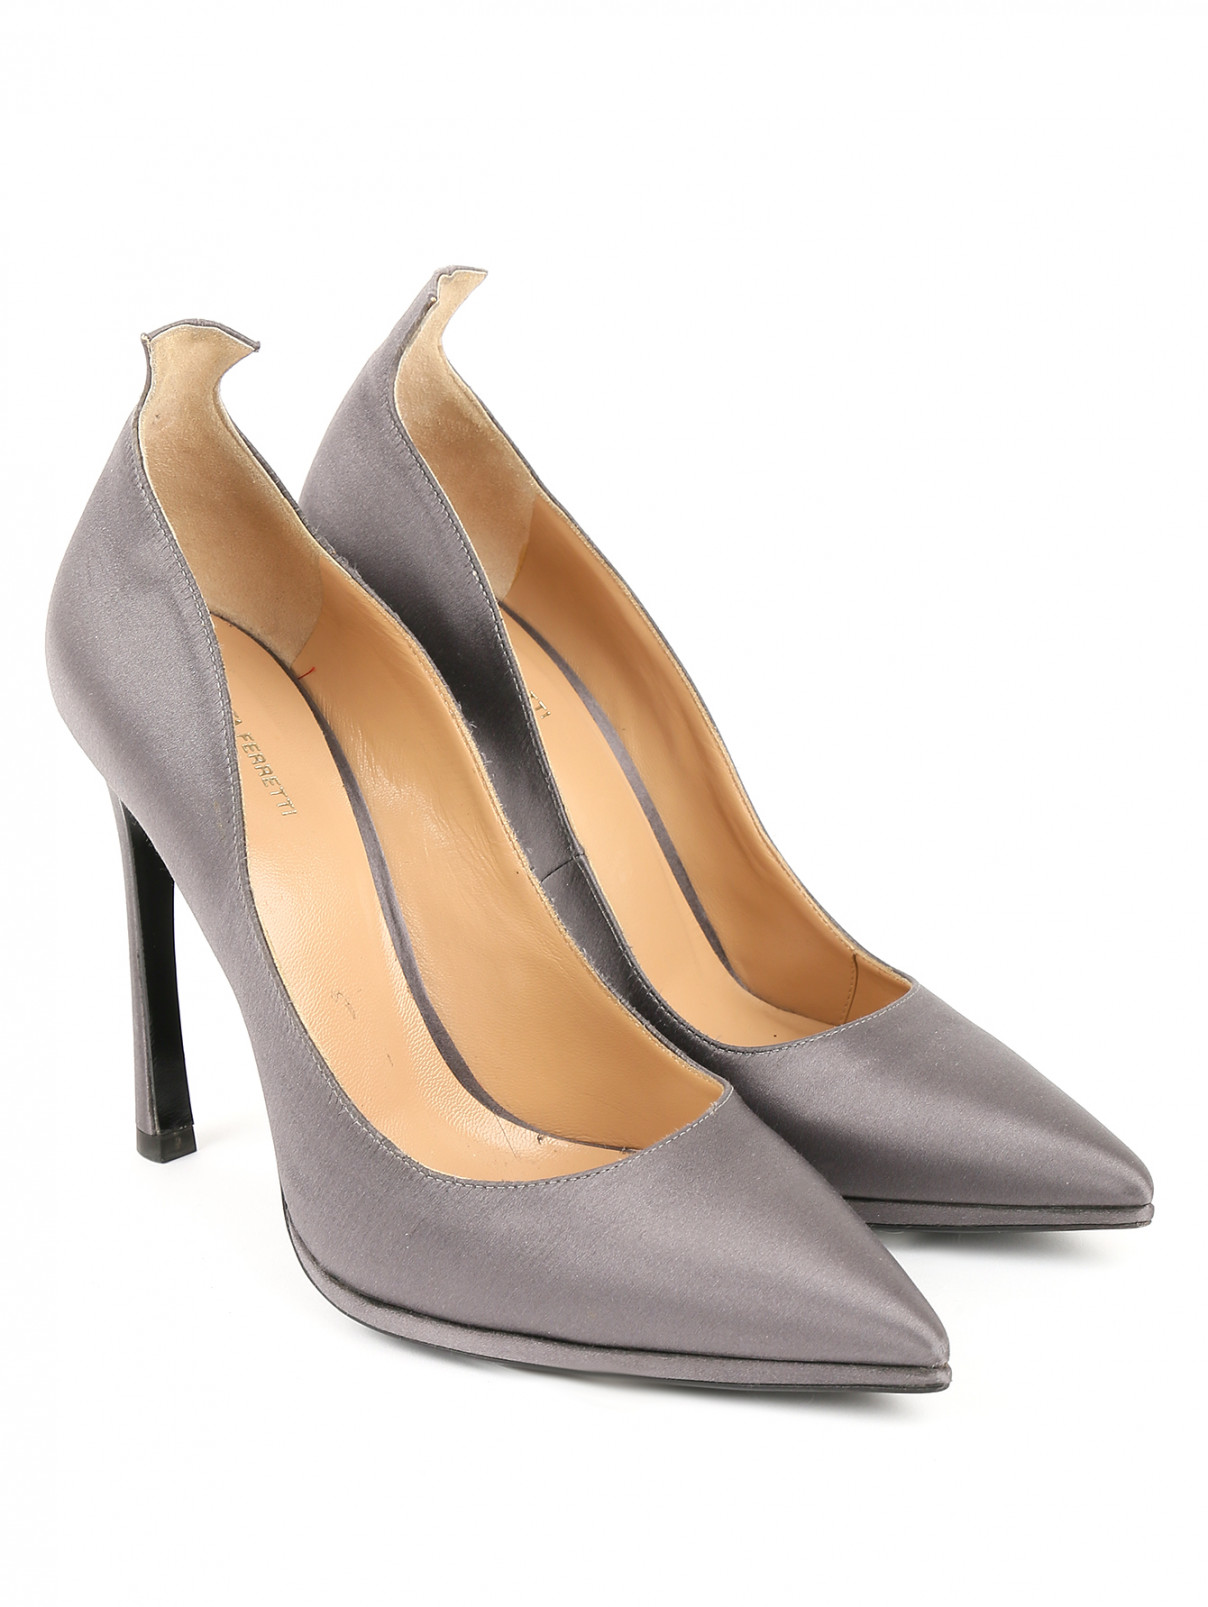 Туфли-лодочки на высоком каблуке Alberta Ferretti  –  Общий вид  – Цвет:  Серый